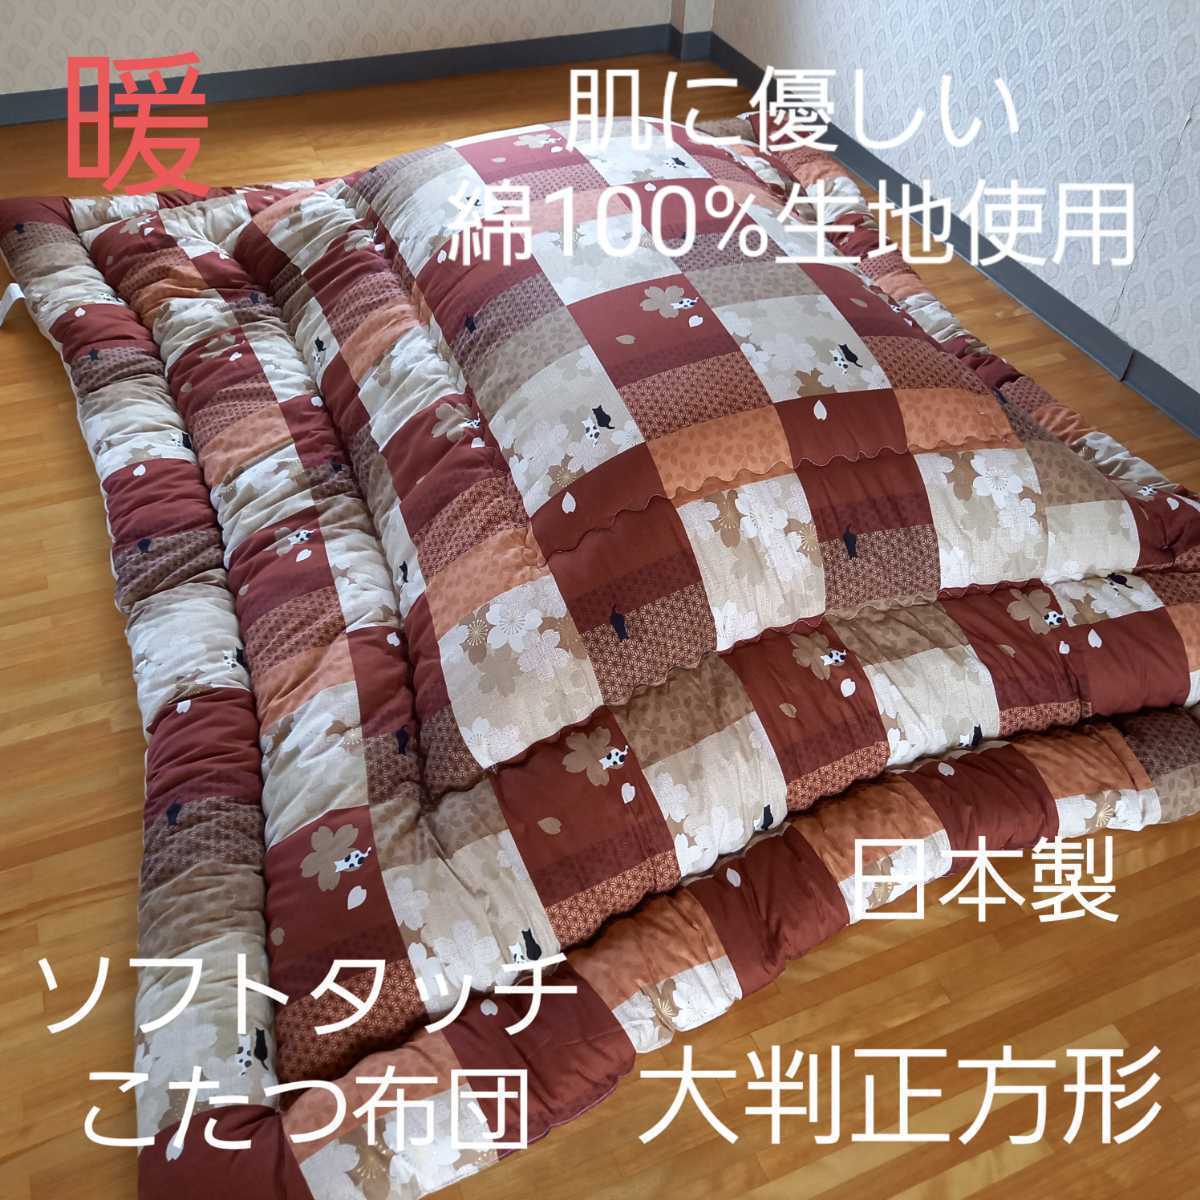 厚掛け 超撥水加工 こたつ布団 超大判長方形 清潔 安心 日本製